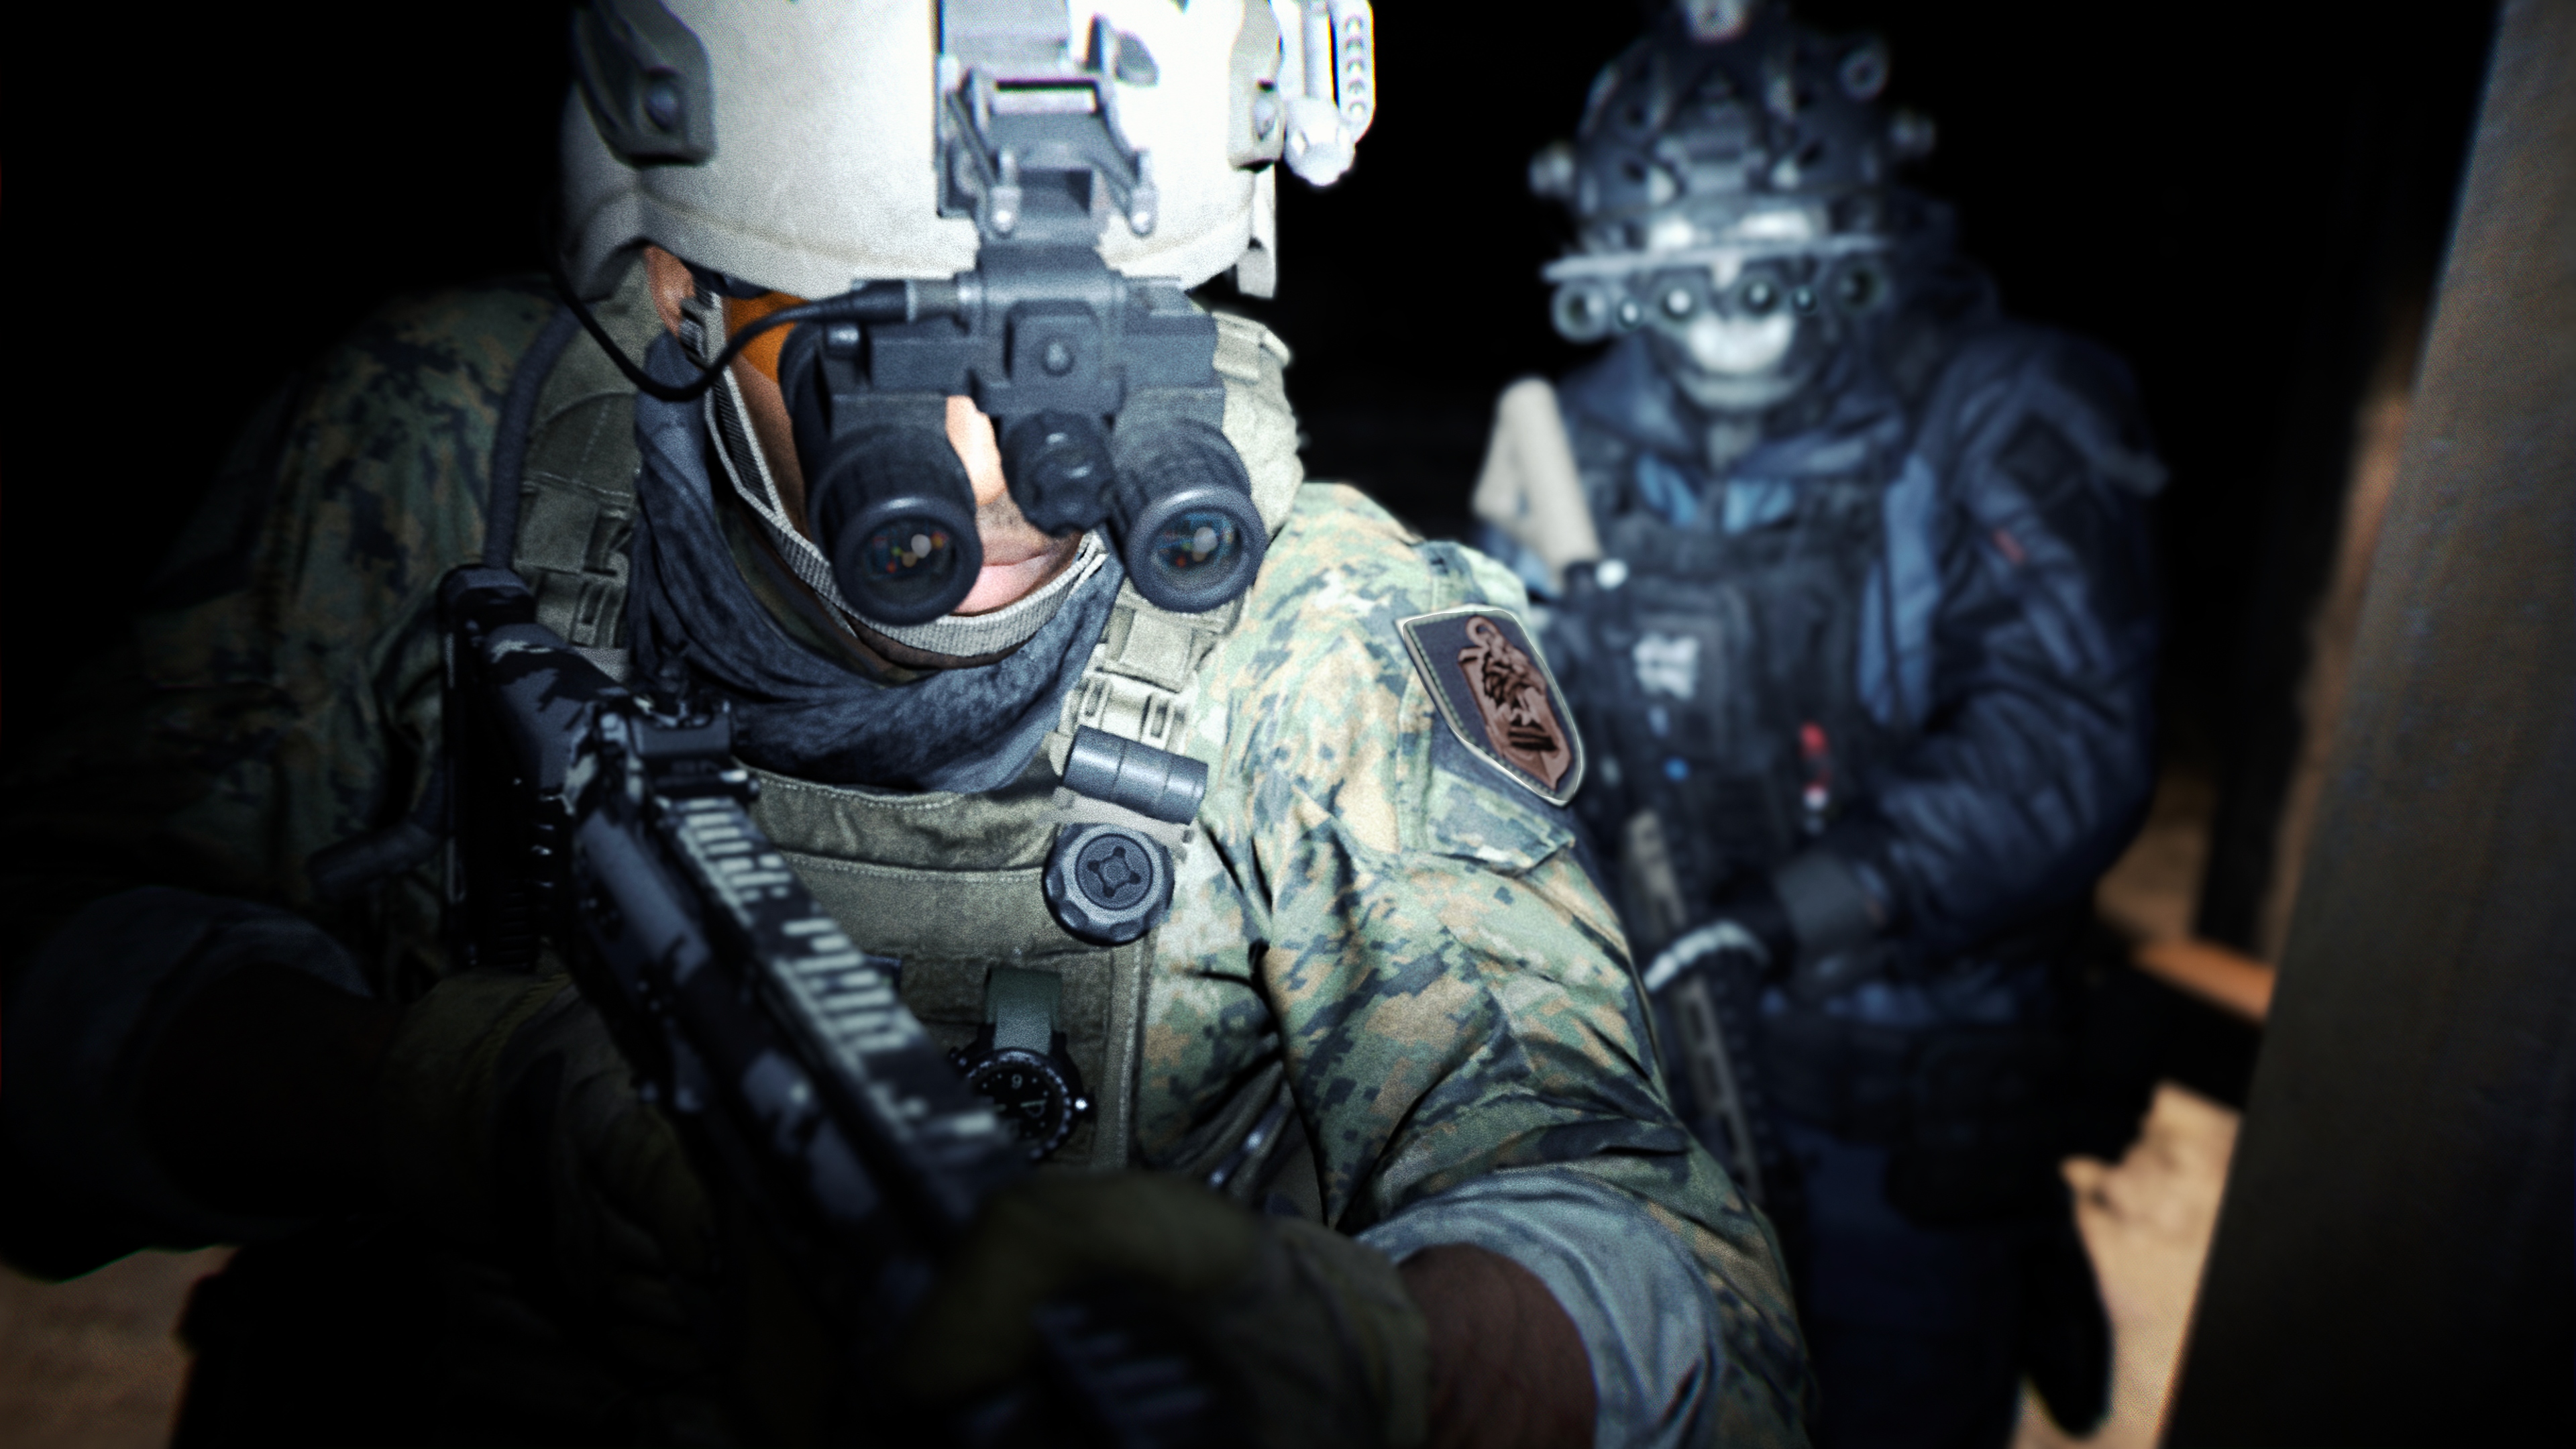 Call of Duty: Modern Warfare 2 2022 – kuvakaappaus jossa näkyy yönäkölasein varusteltu hahmo